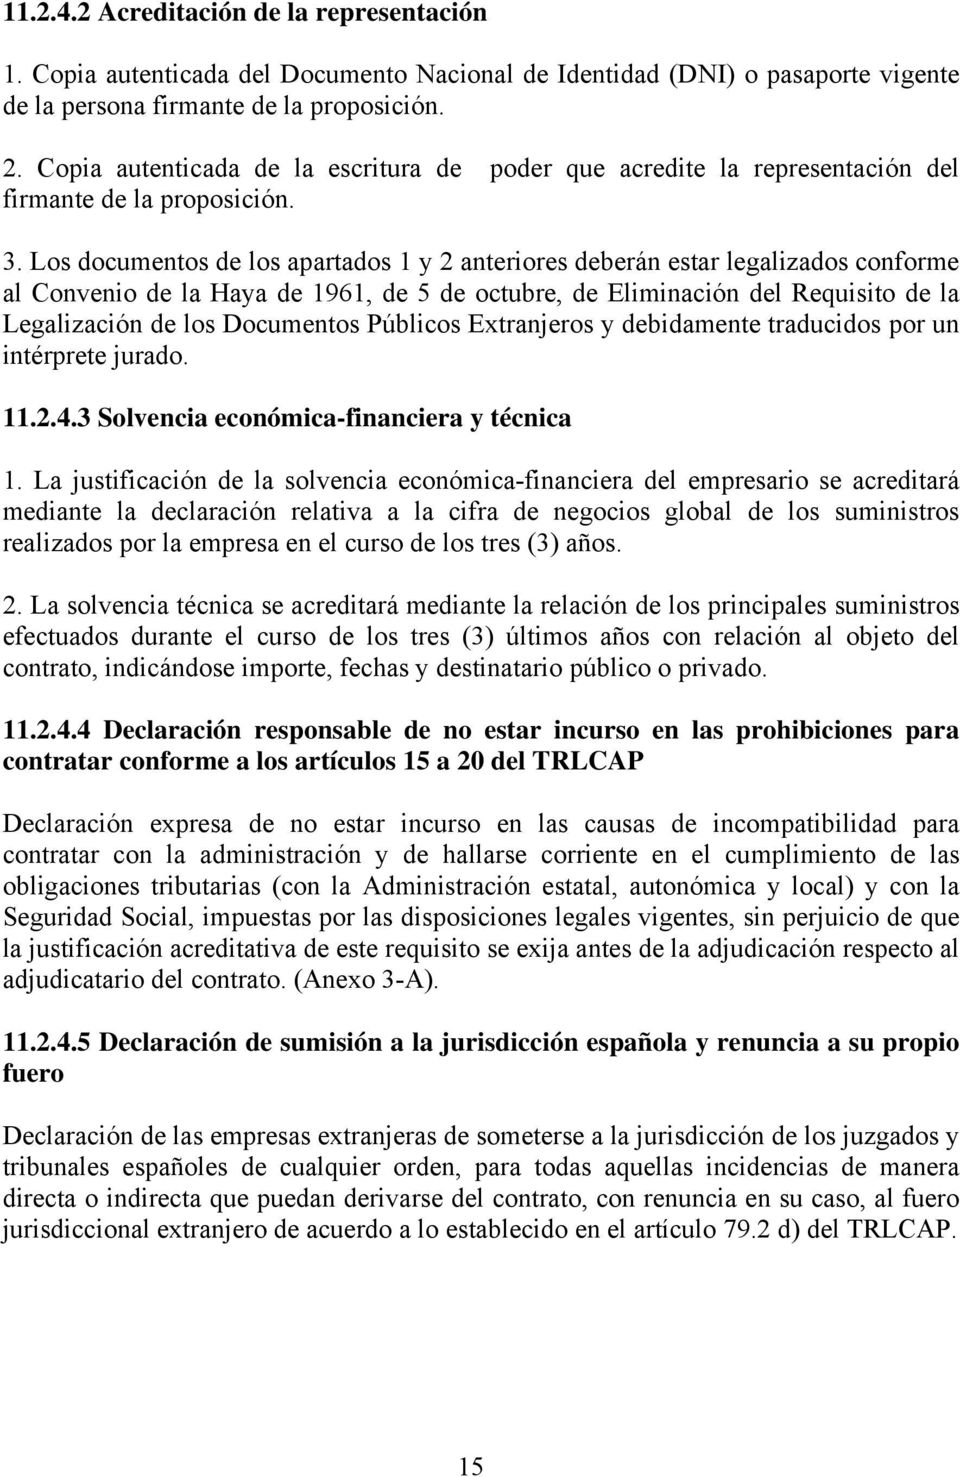 Los documentos de los apartados 1 y 2 anteriores deberán estar legalizados conforme al Convenio de la Haya de 1961, de 5 de octubre, de Eliminación del Requisito de la Legalización de los Documentos